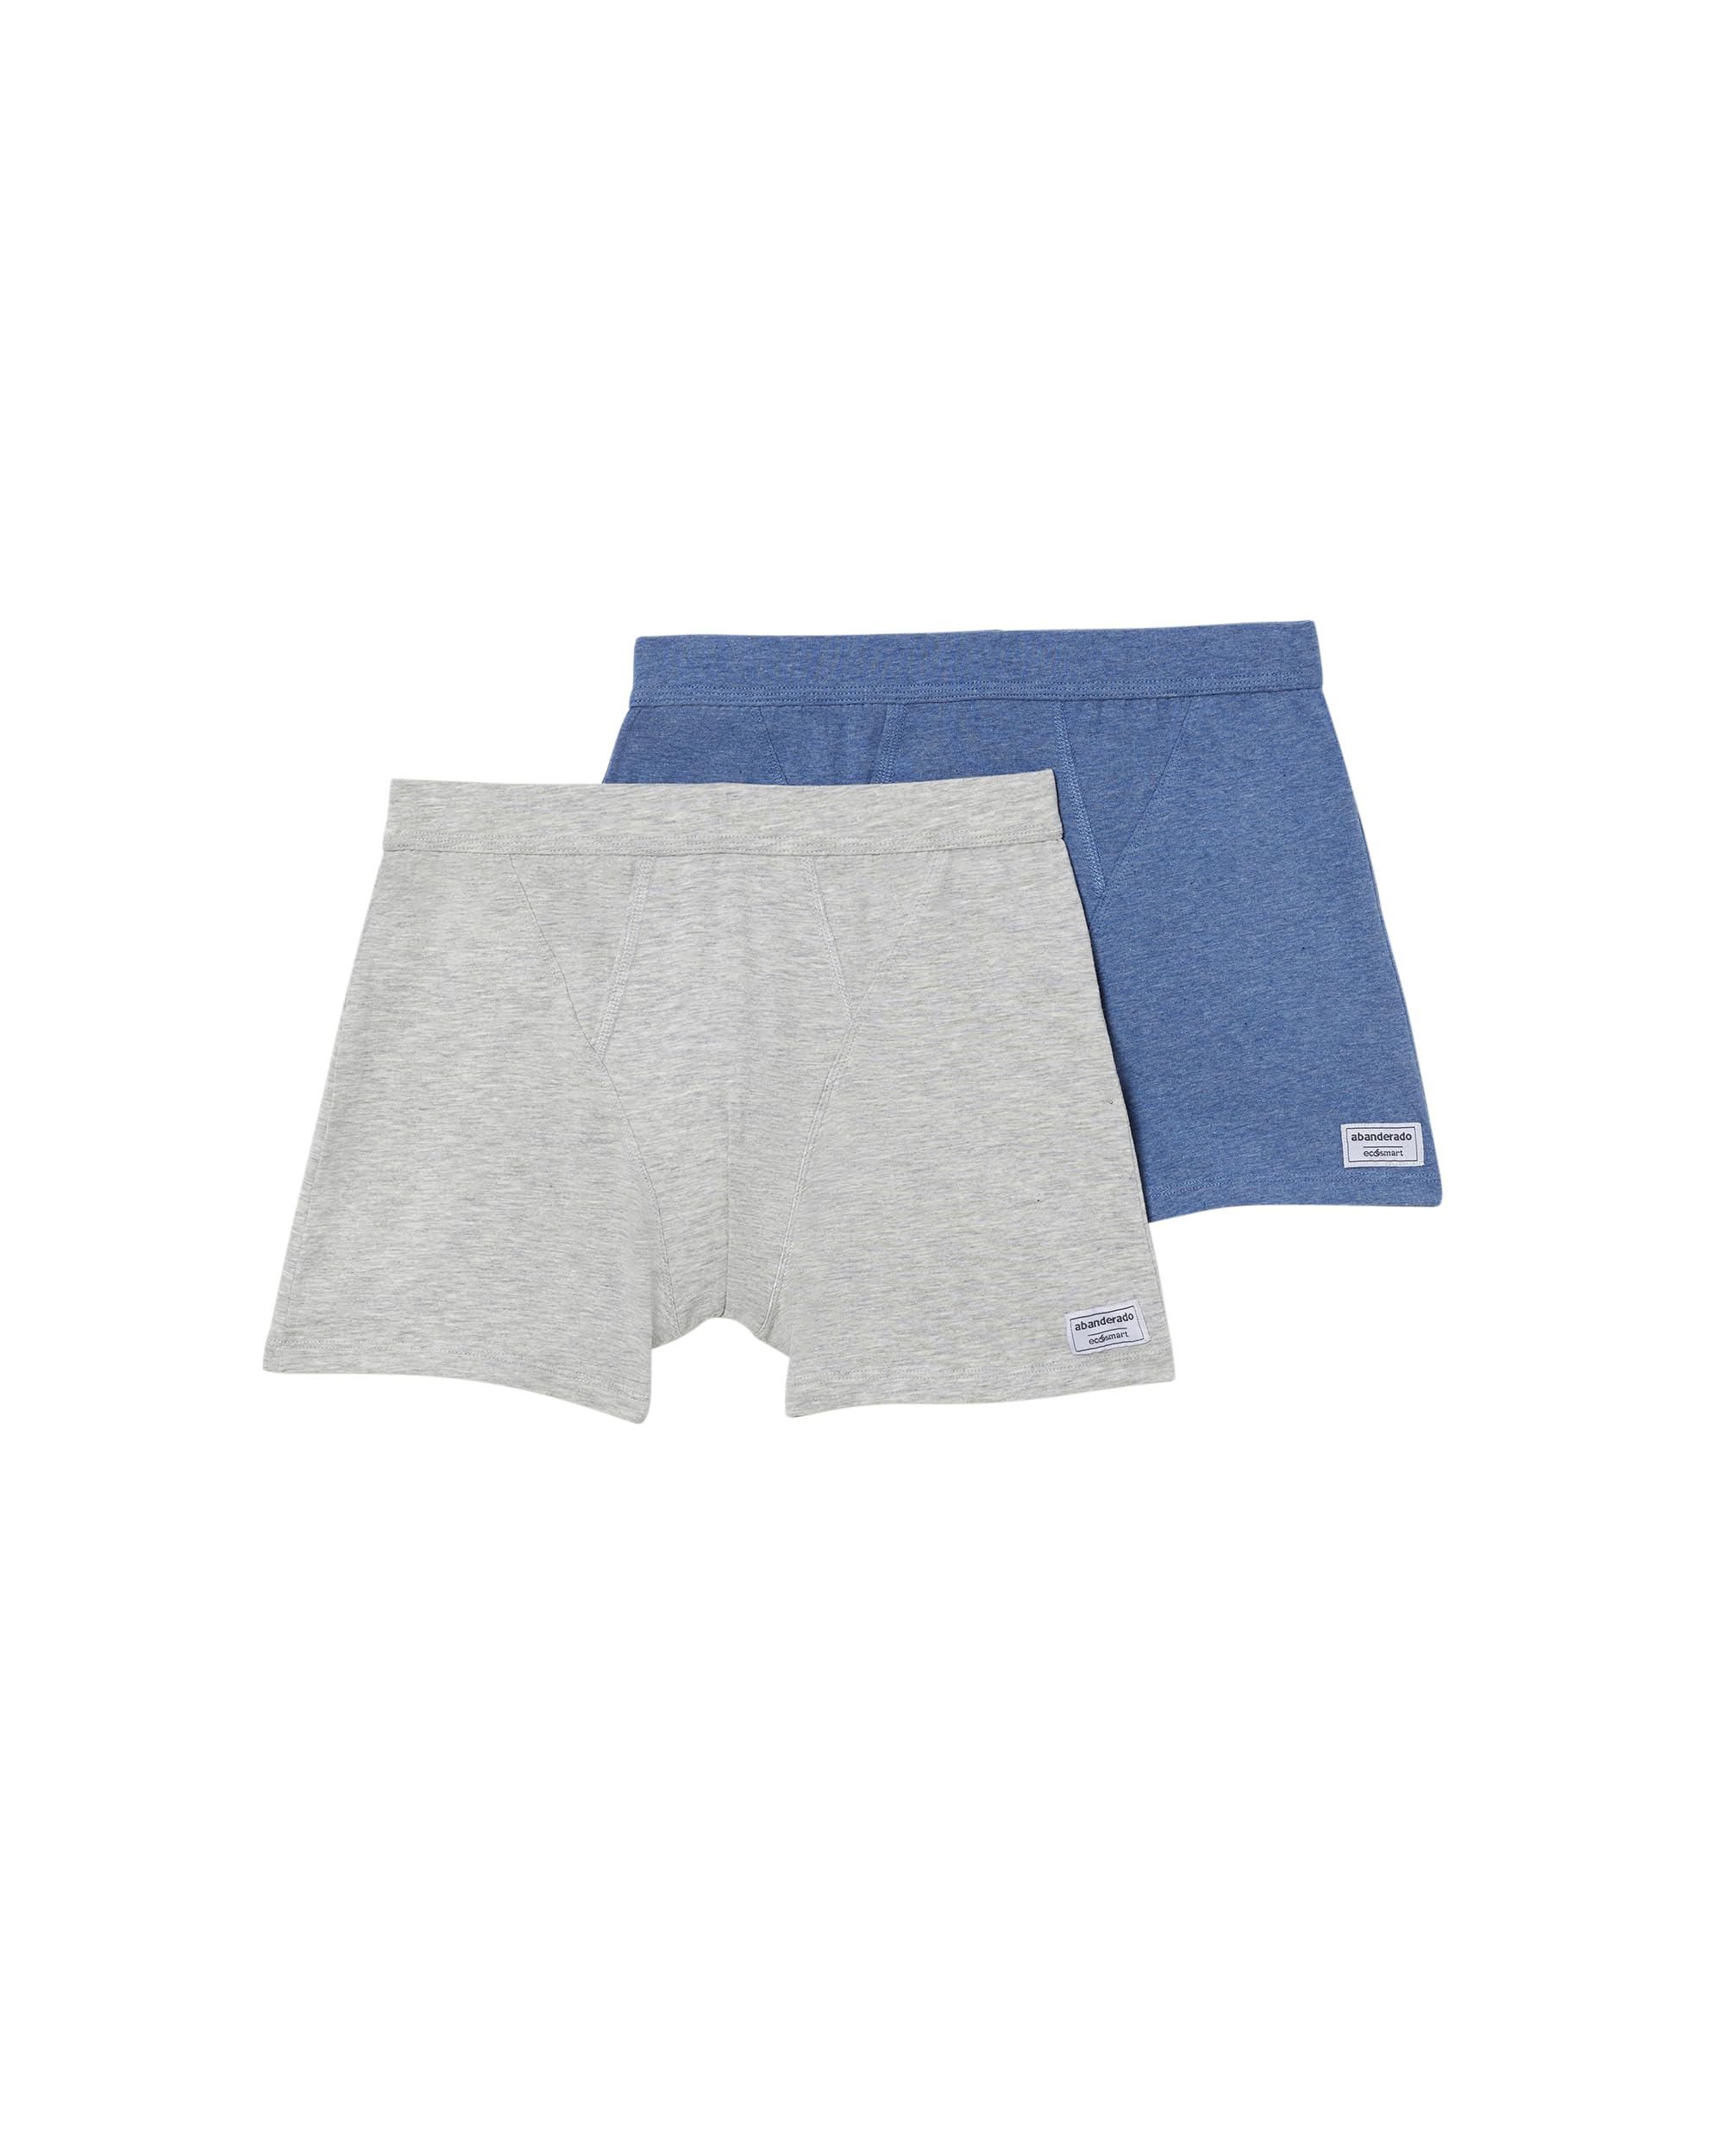 Abanderado Herren EcoSmart Offene Boxershorts, Blau/Grau (Vigore), XL (2er Pack)